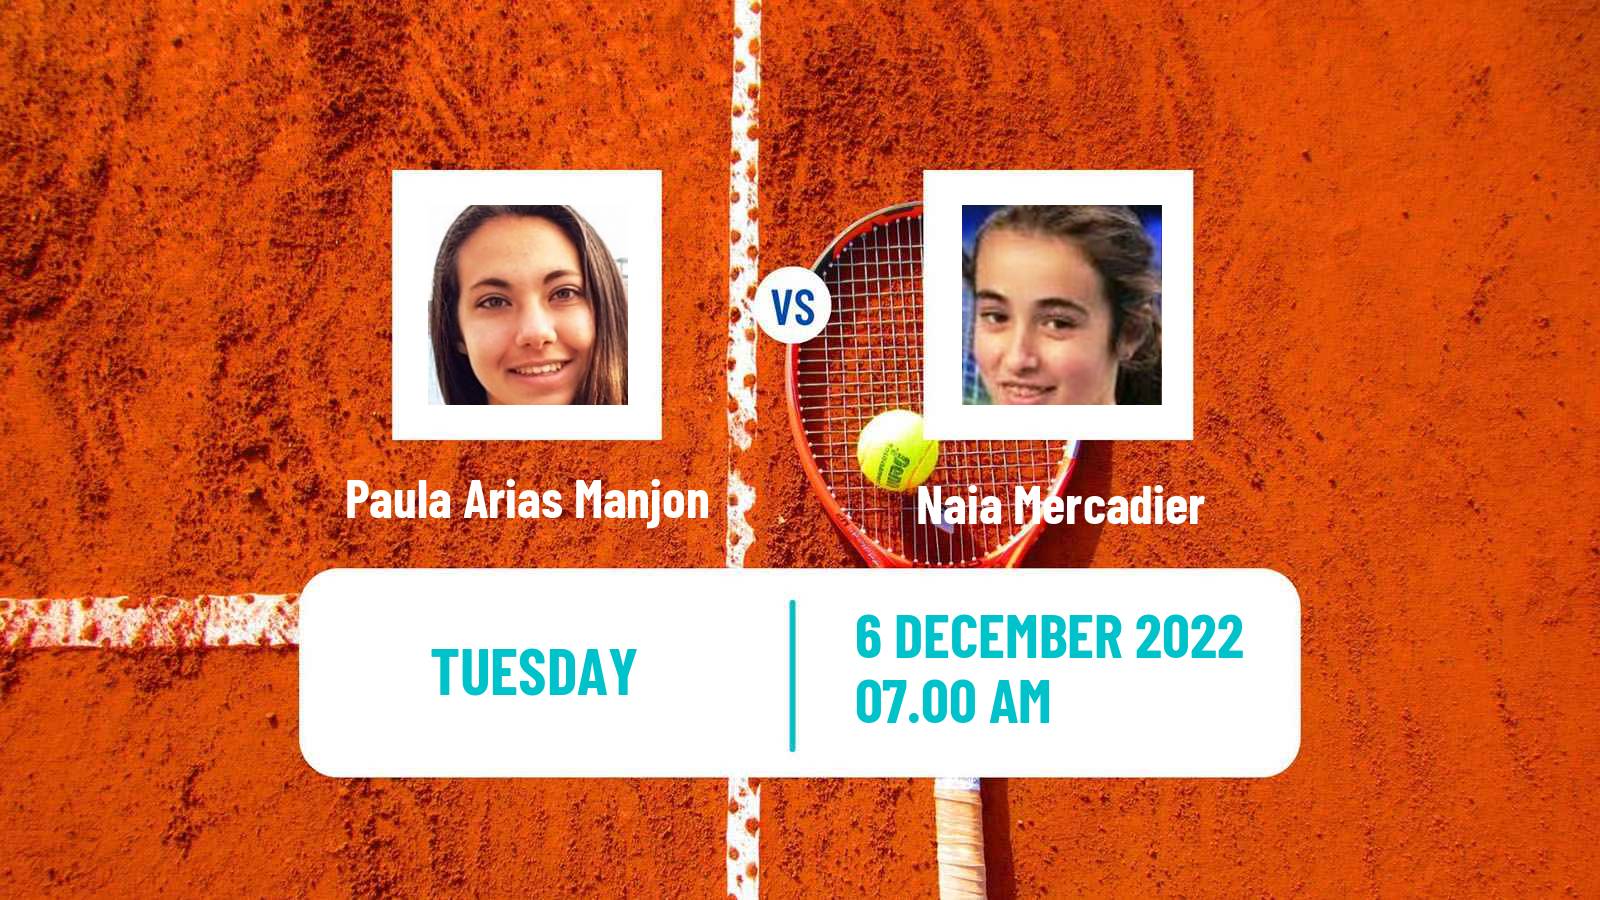 Tennis ITF Tournaments Paula Arias Manjon - Naia Mercadier